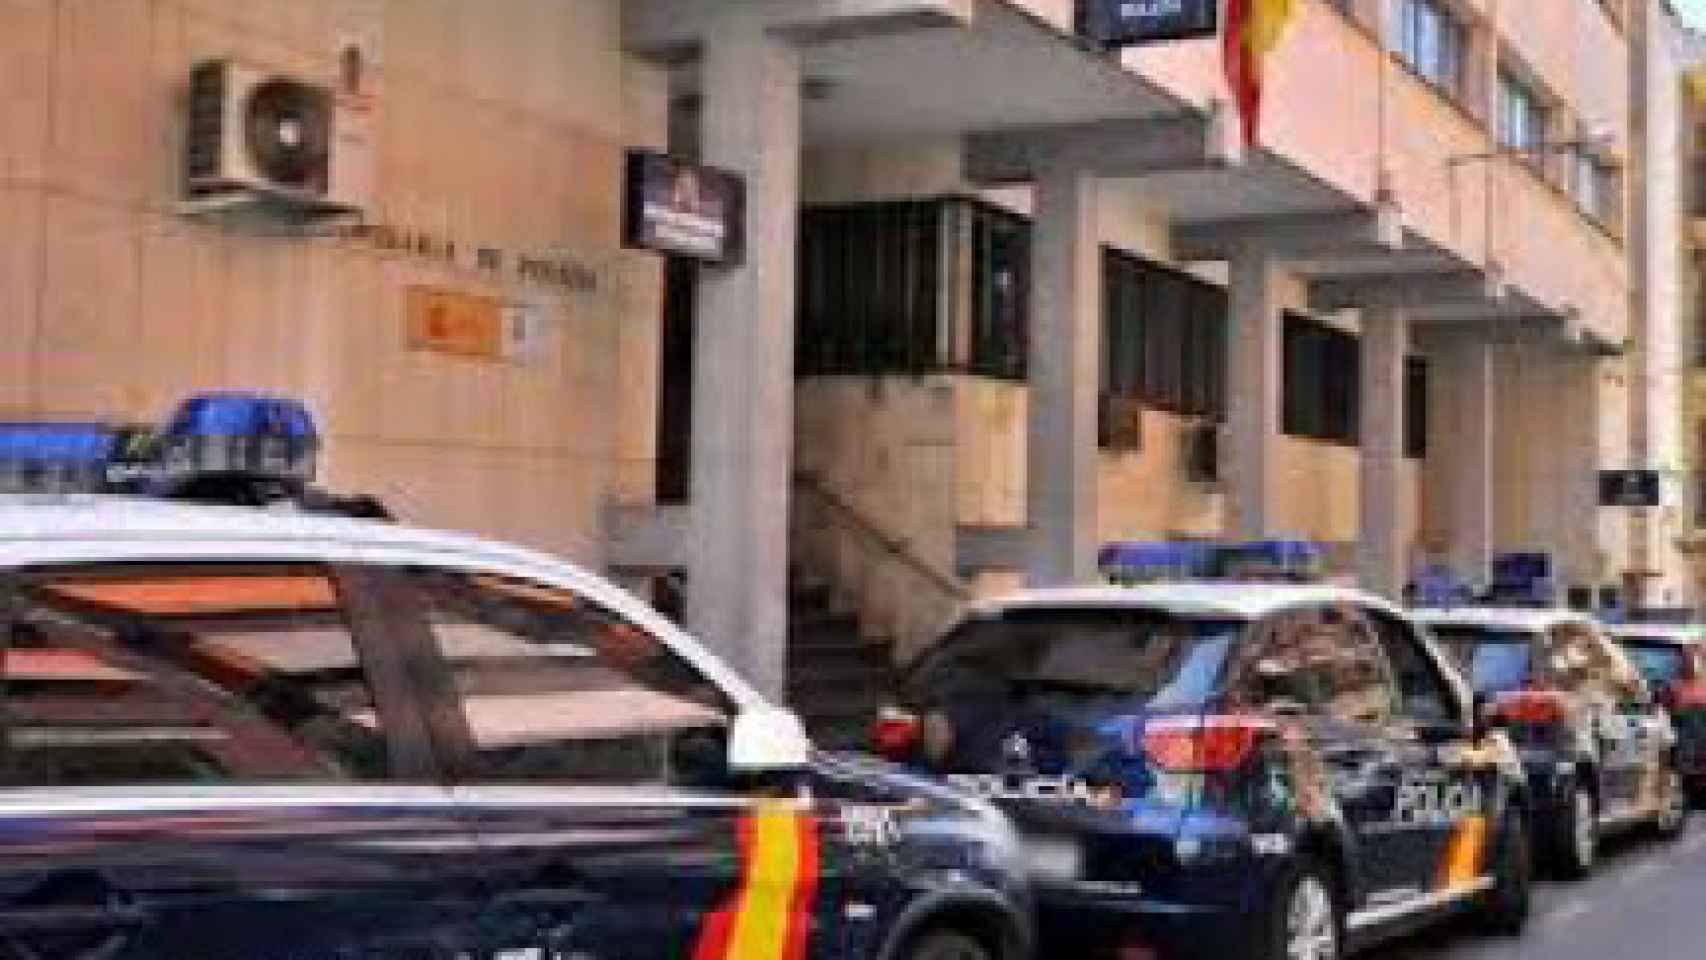 Comisaría de Policía Nacional donde está destinado el agente Manuel.